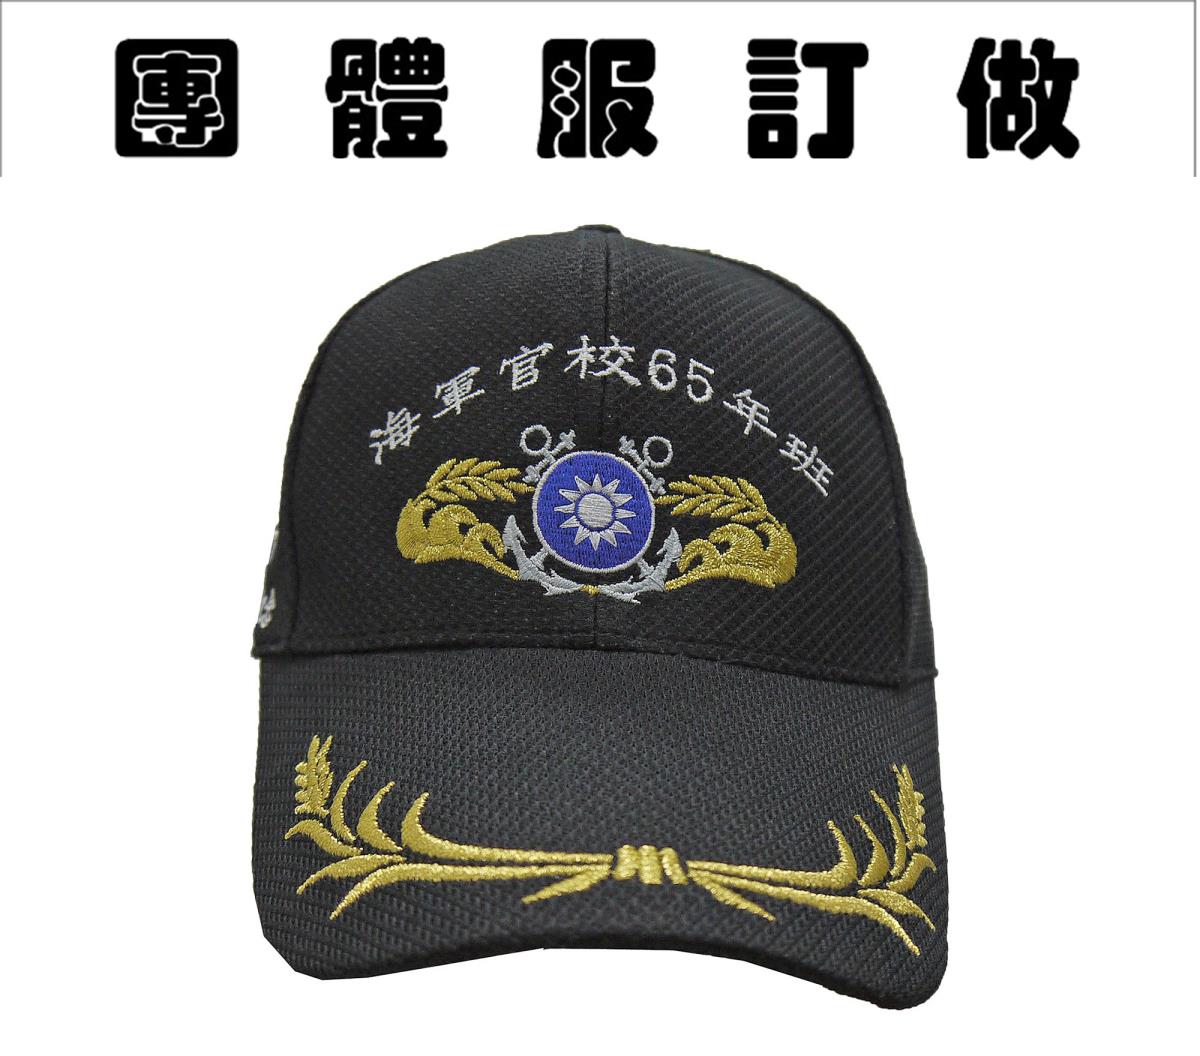 海軍官校65年班帽子,佳豐有限公司